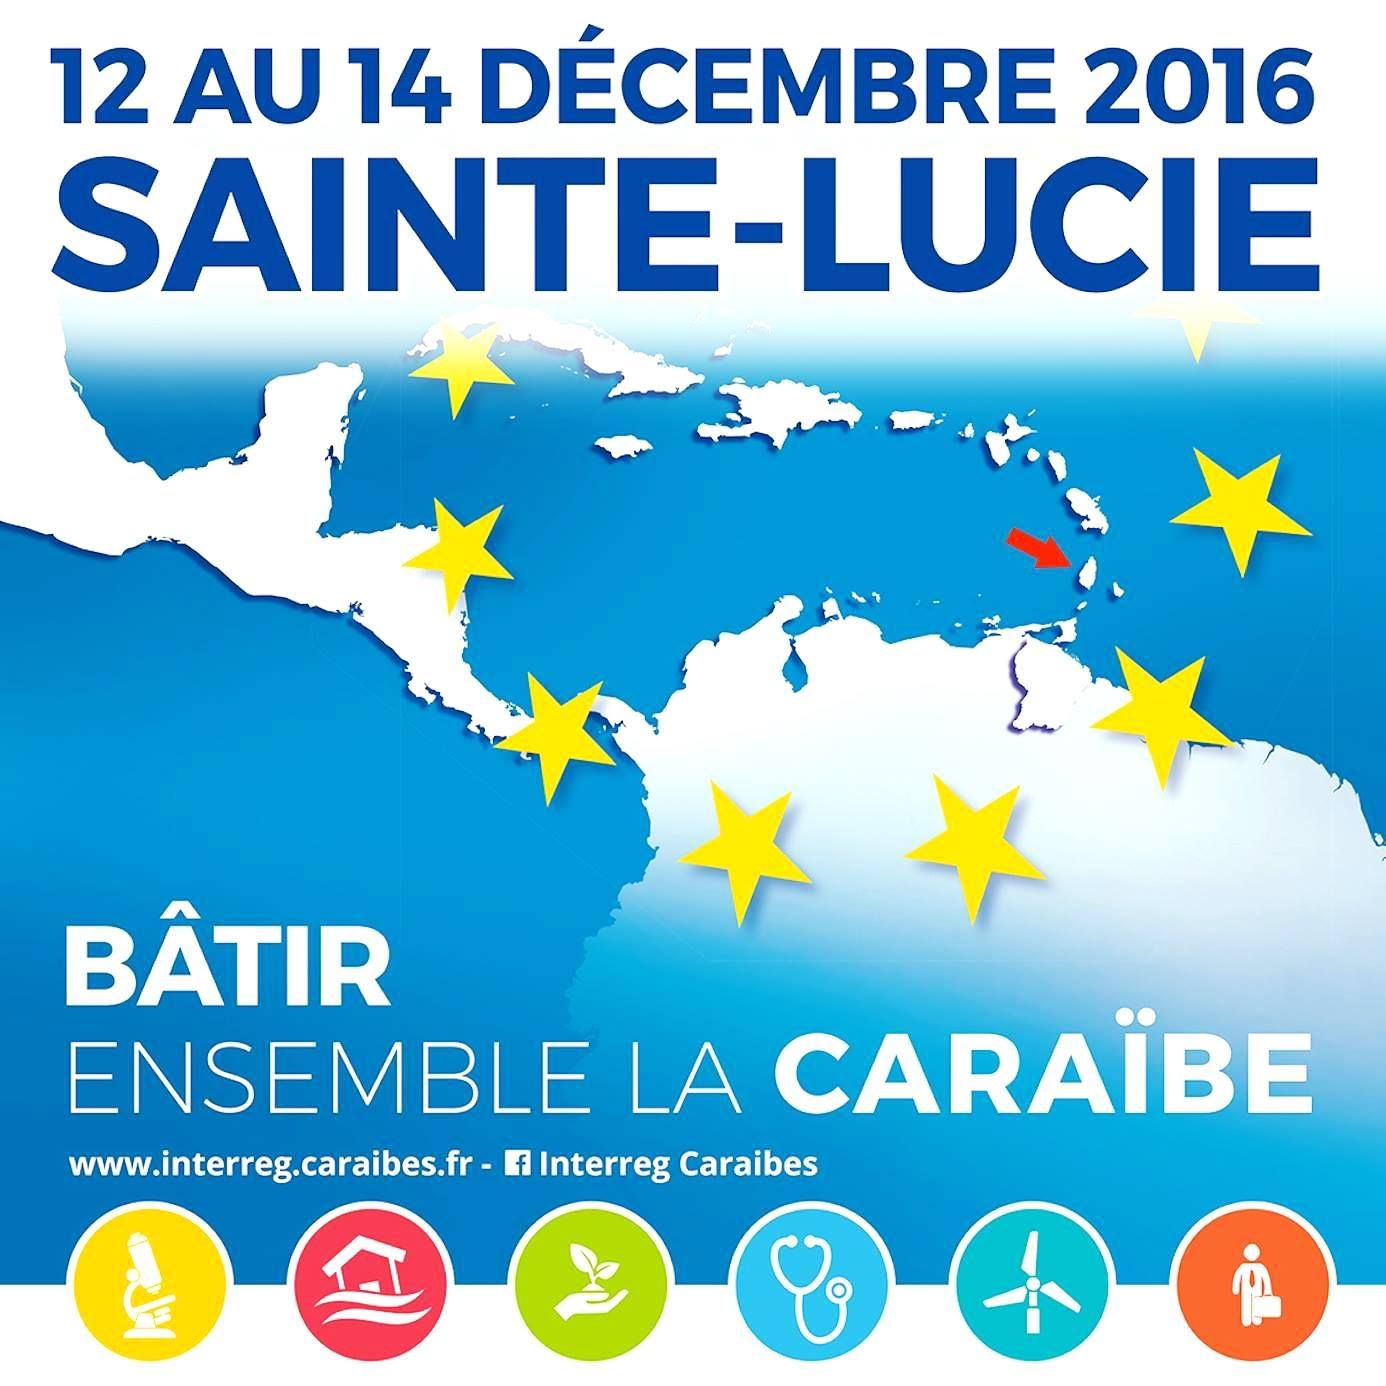 Coopération régionale : Consensus des acteurs à Sainte-Lucie autour du programme Interreg V Caraïbes